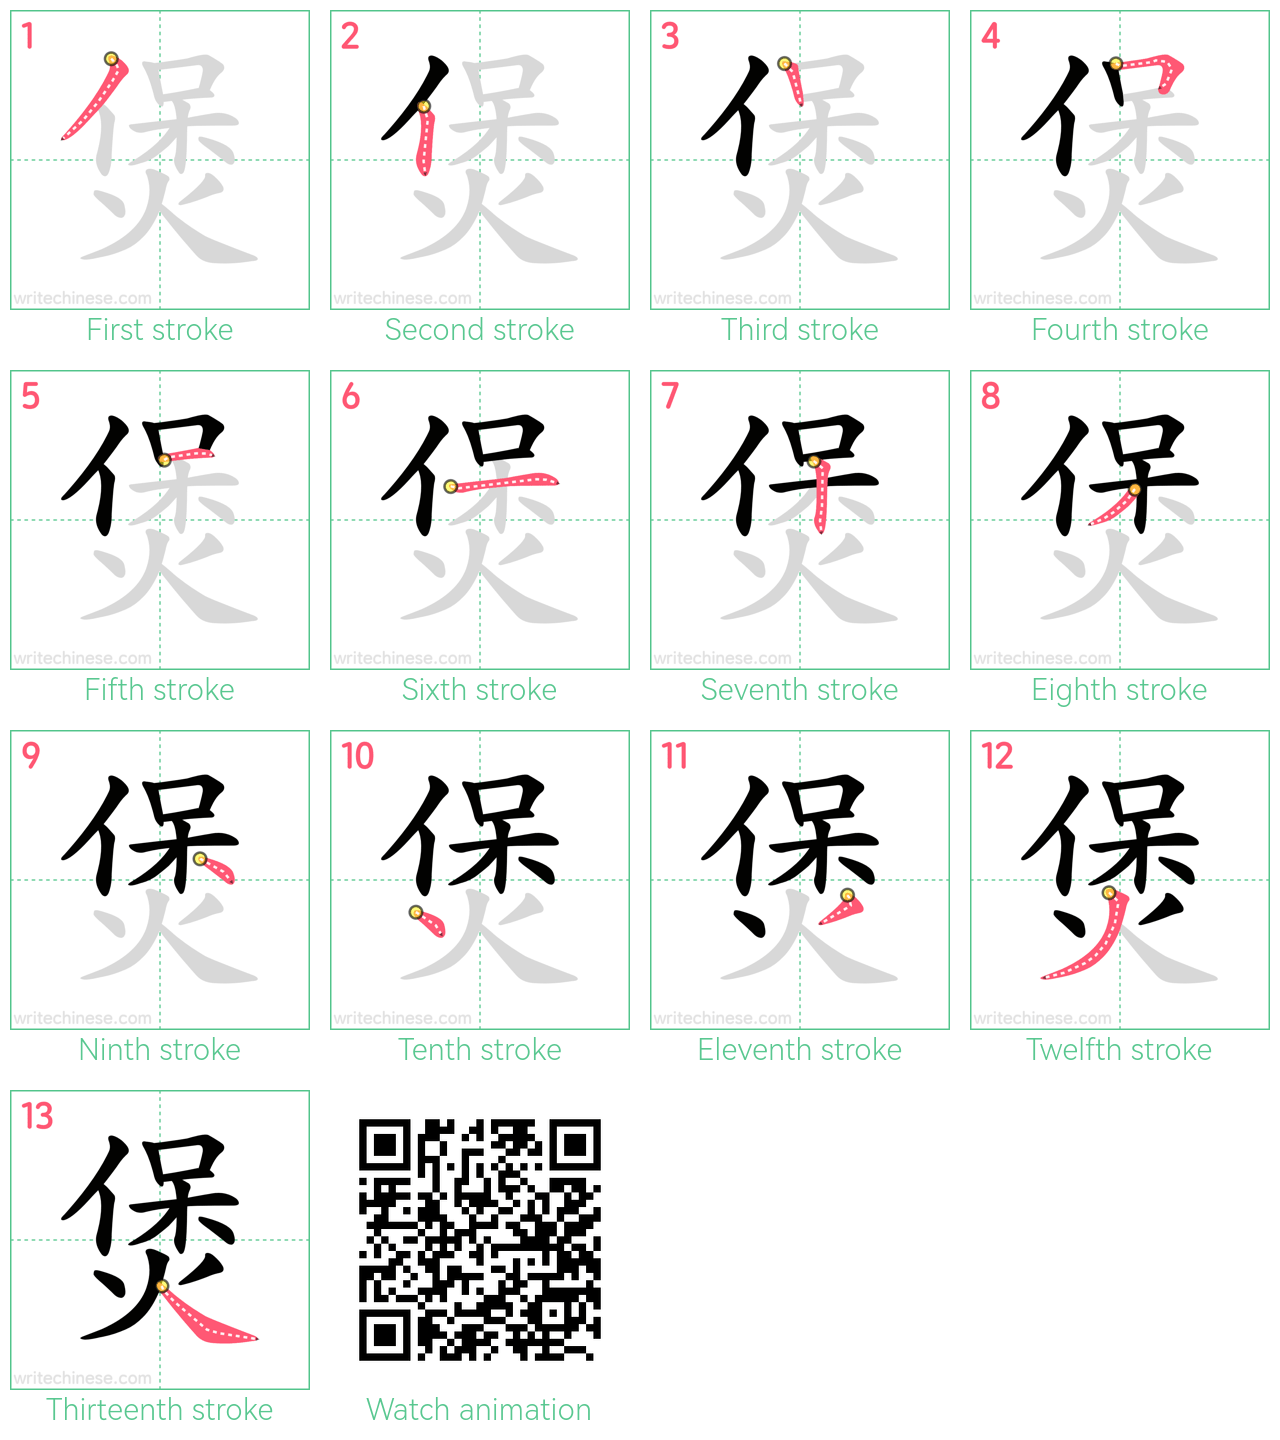 煲 step-by-step stroke order diagrams